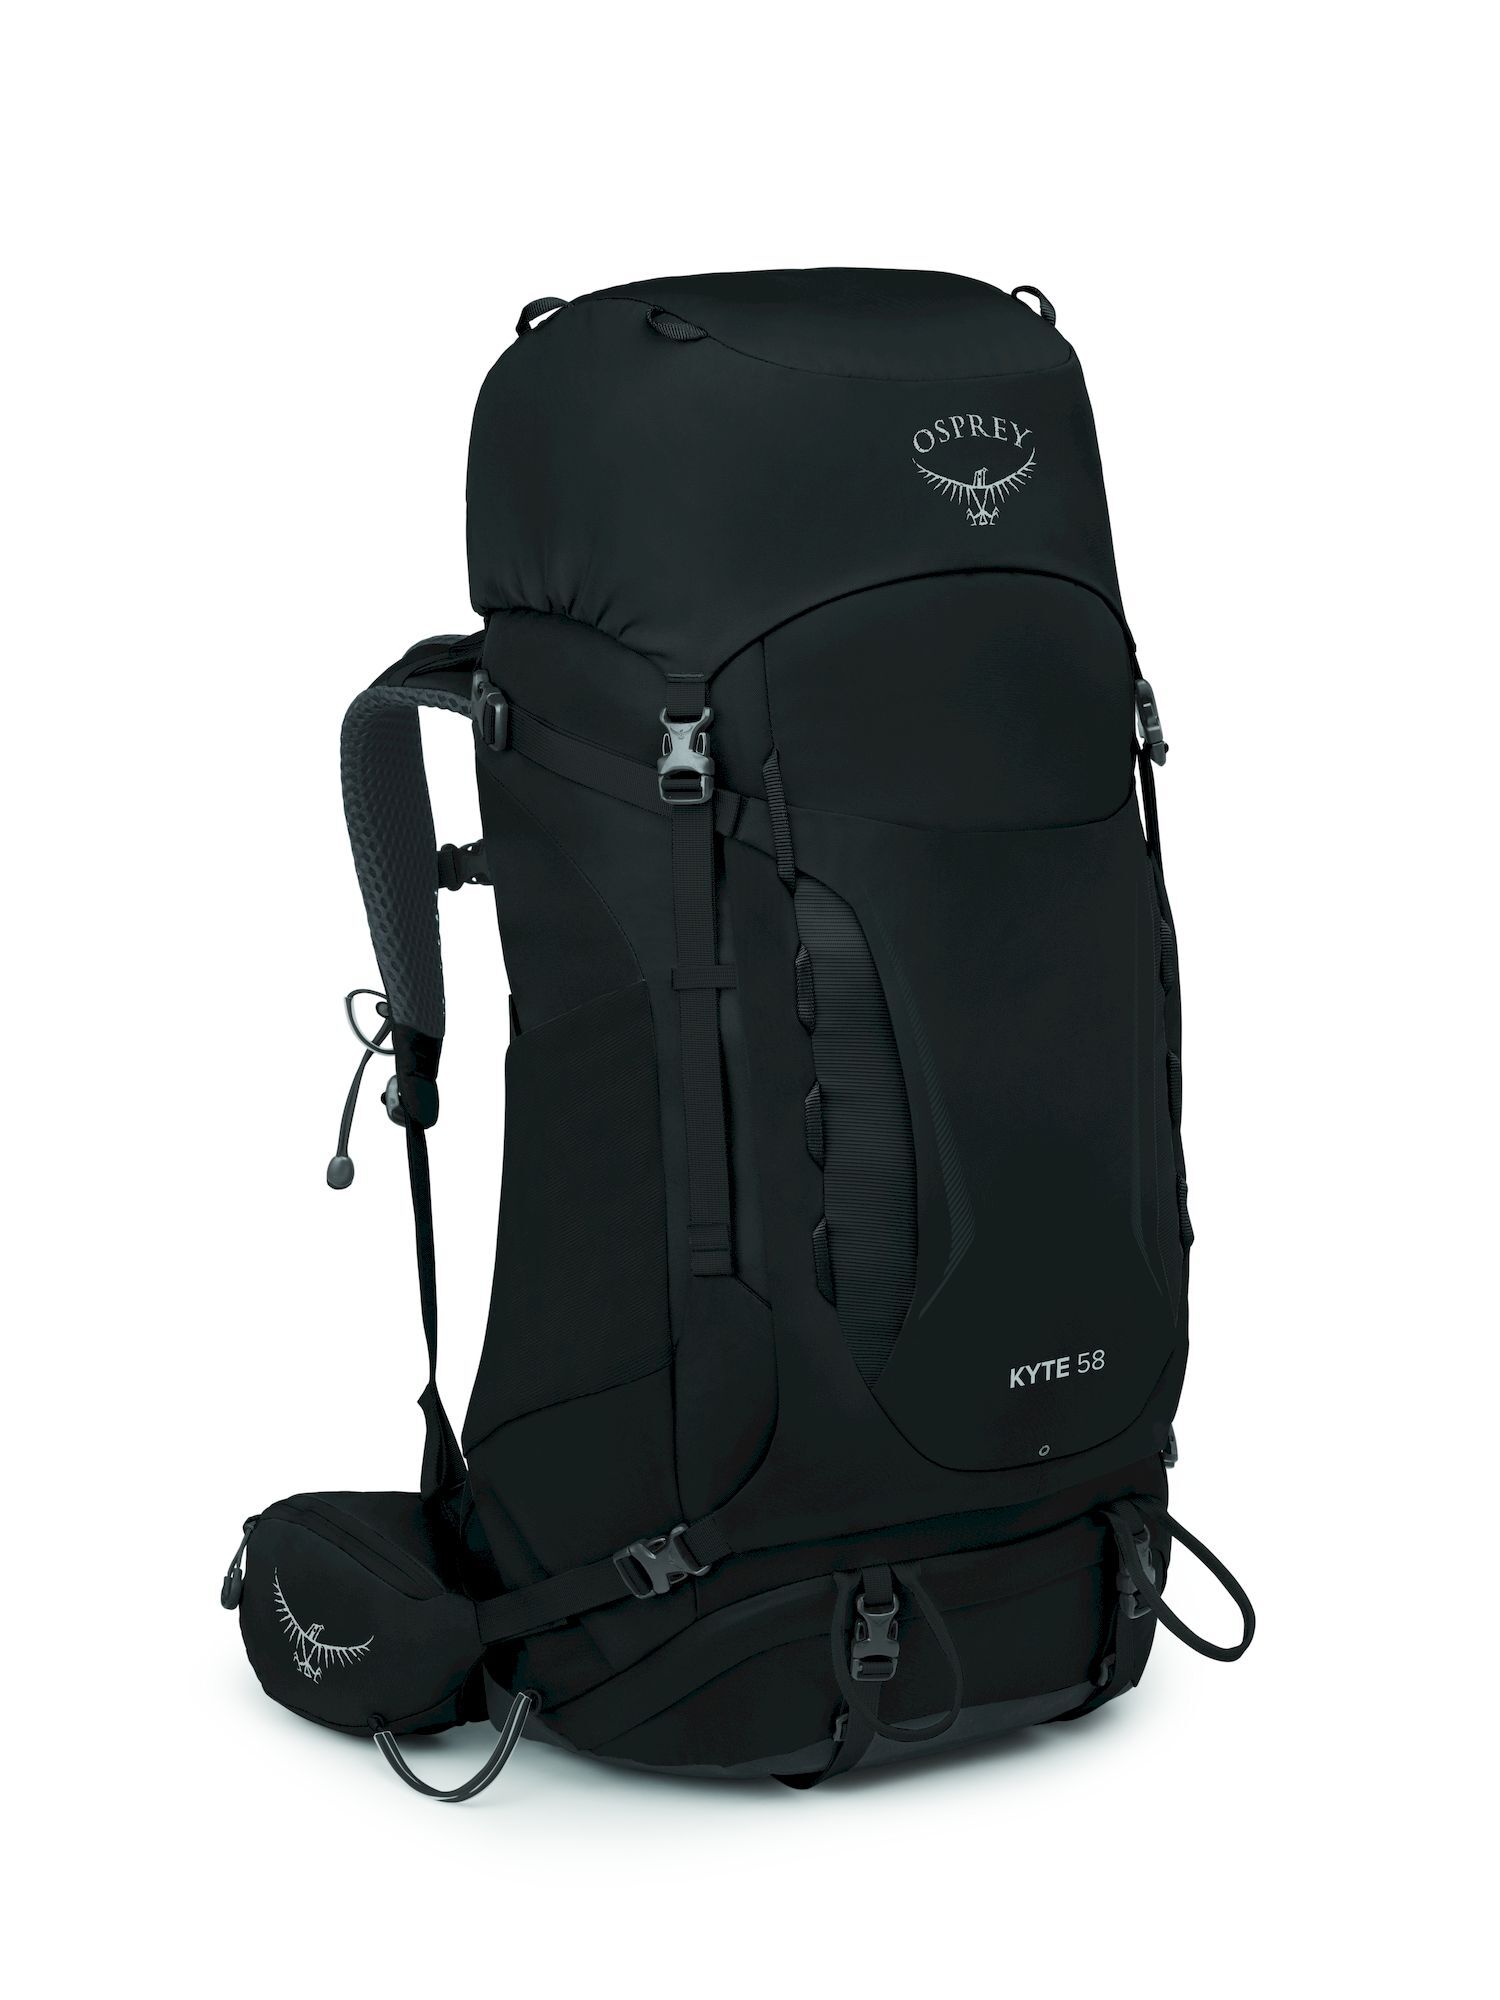 Osprey Kyte 58 - Hiking backpack - Women's | Hardloop